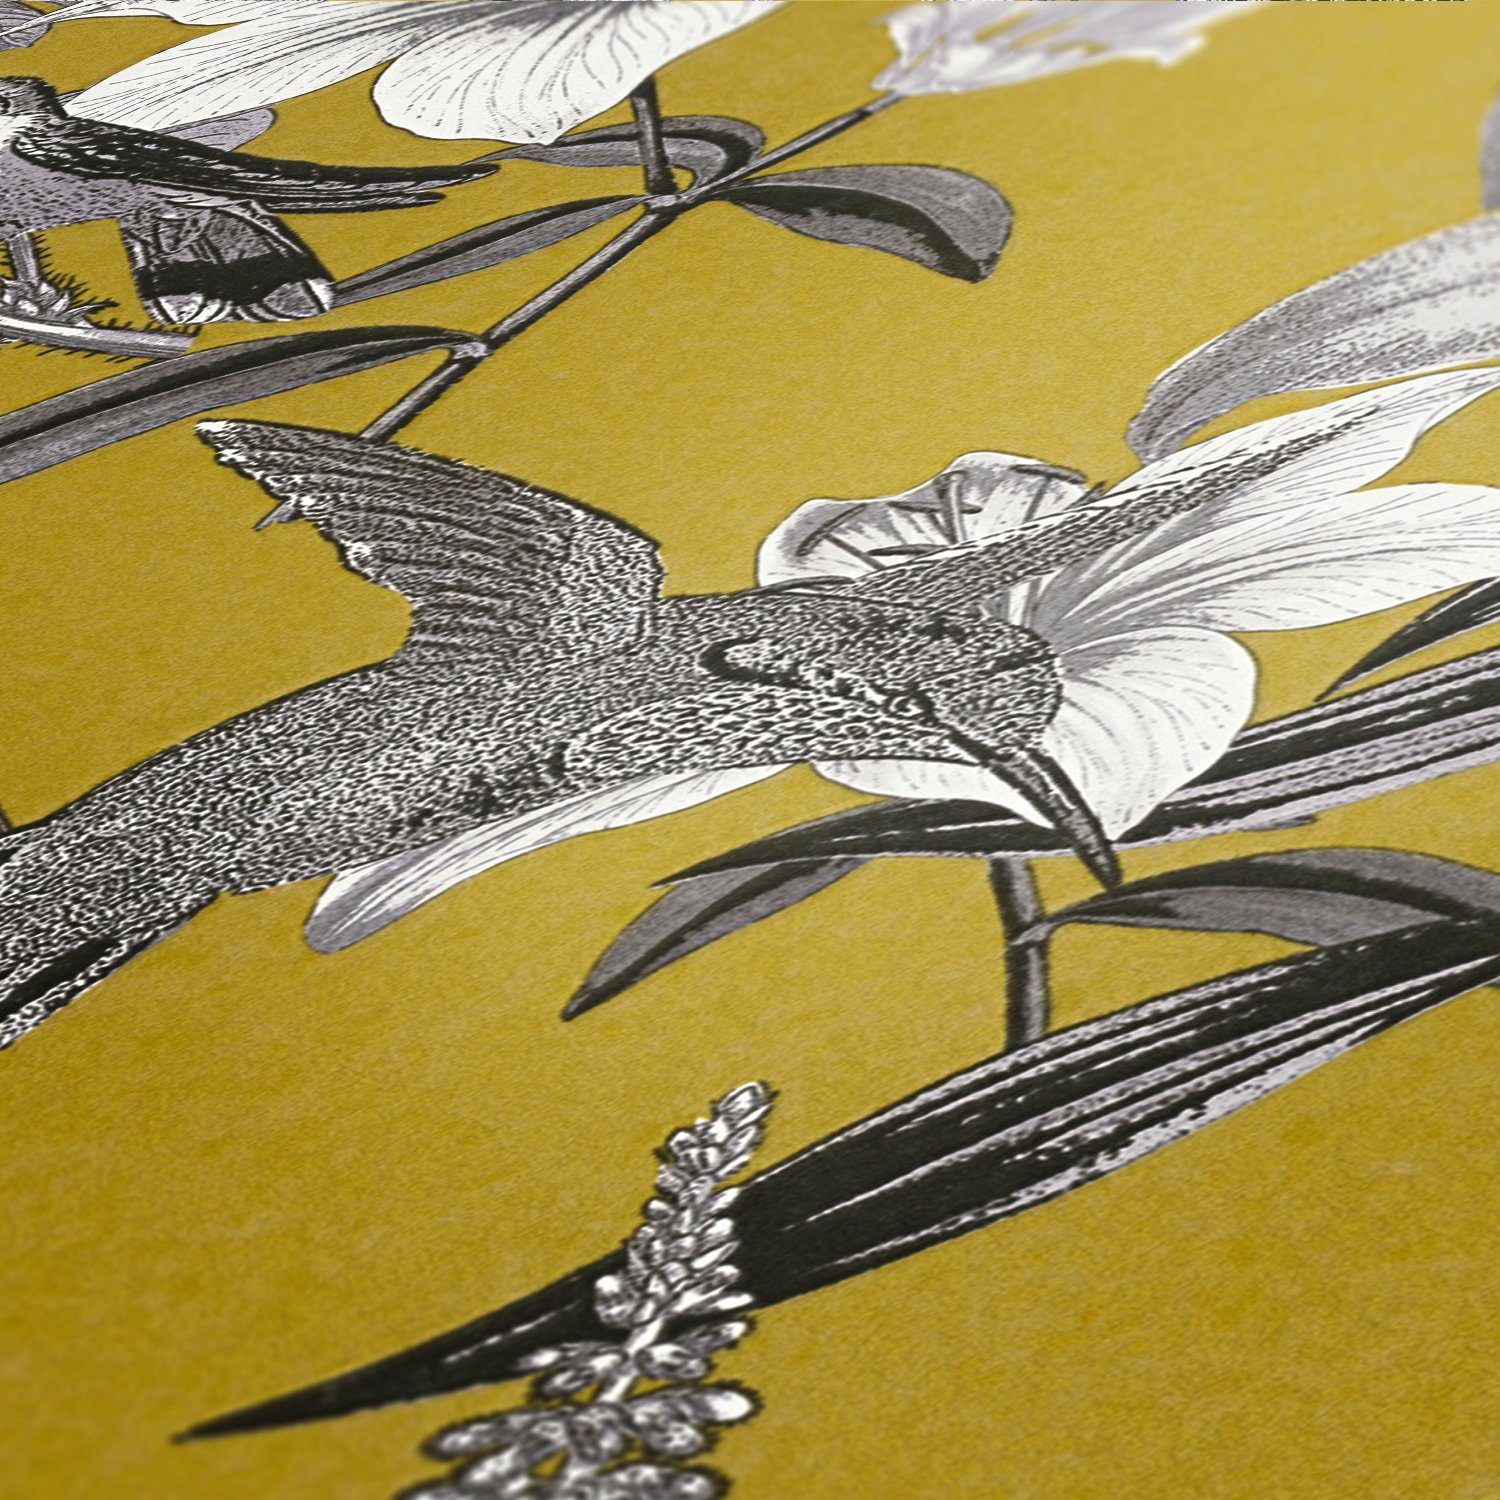 Chic, Paper Blumen gelb/grau/schwarz Vliestapete floral, Jungle tropisch, Vogeltapete Création Architects A.S. Tapete botanisch, glatt,